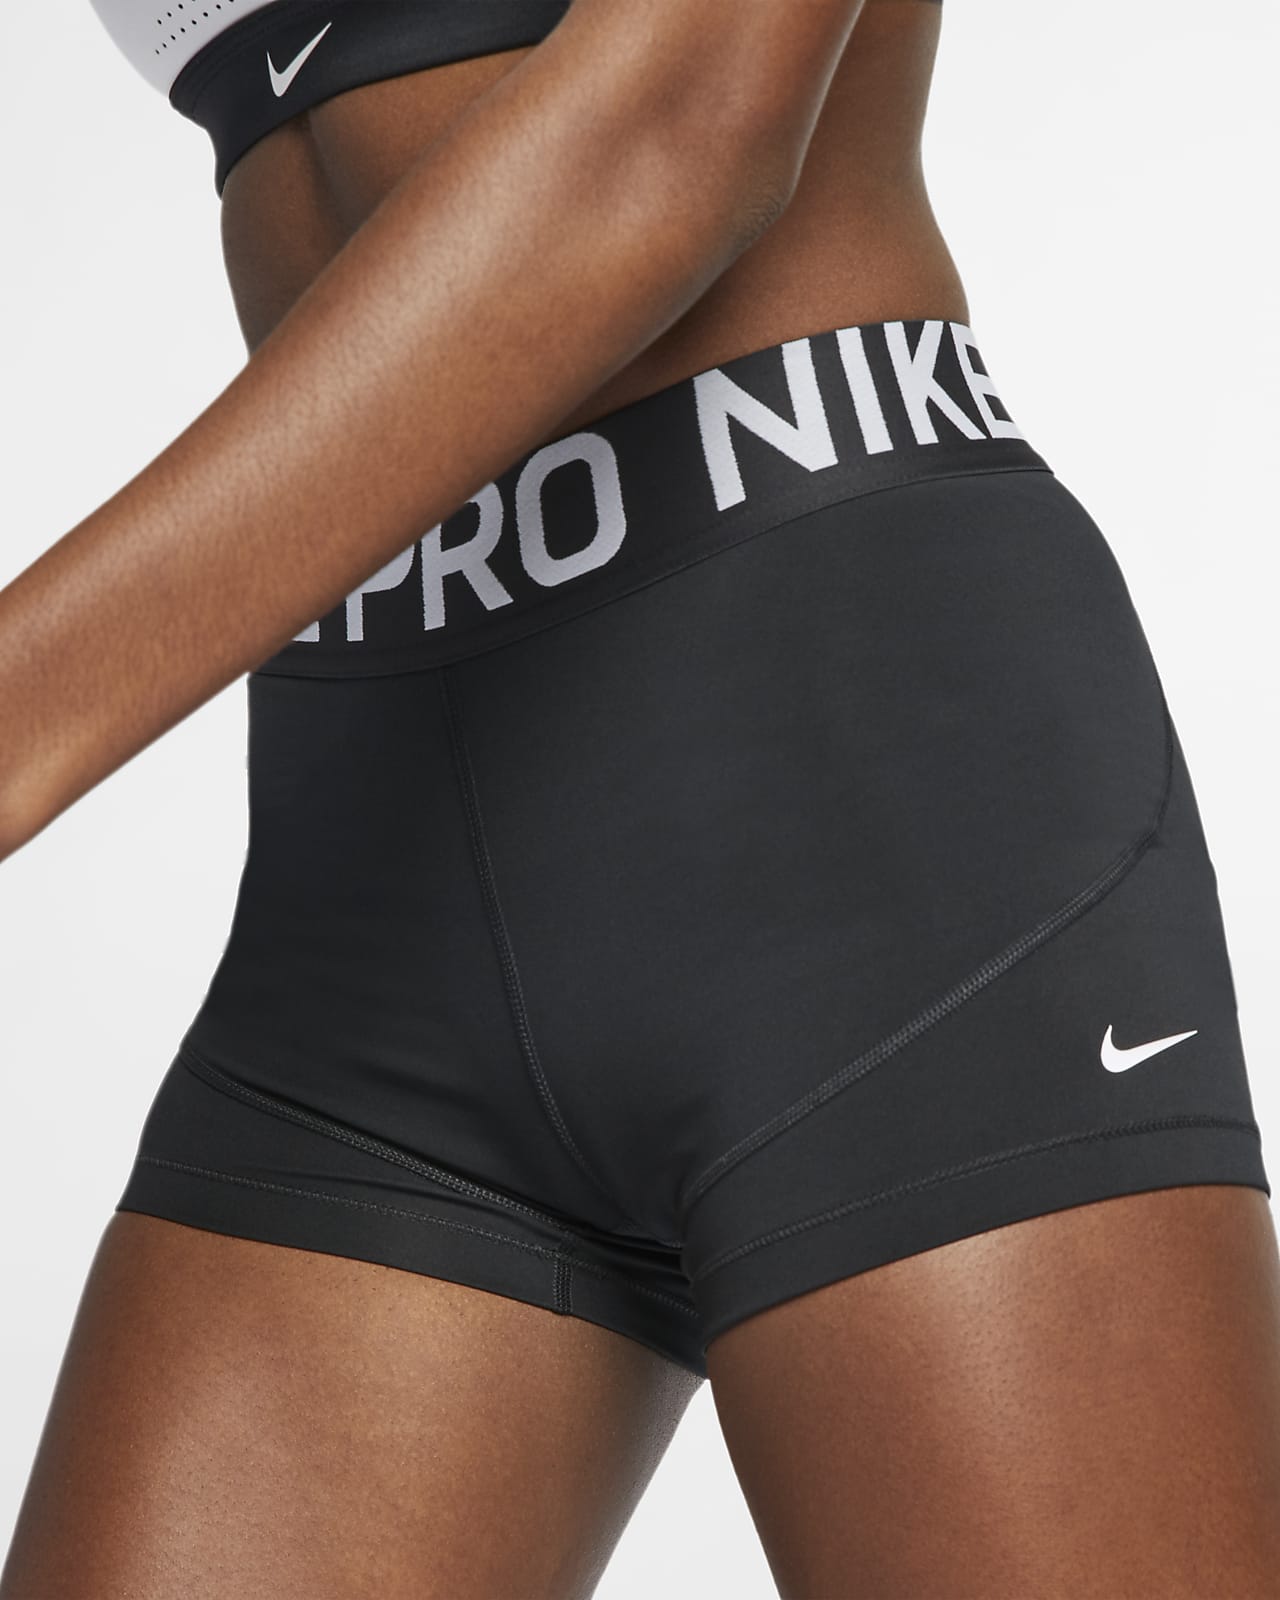 women's nike pro shorts canada